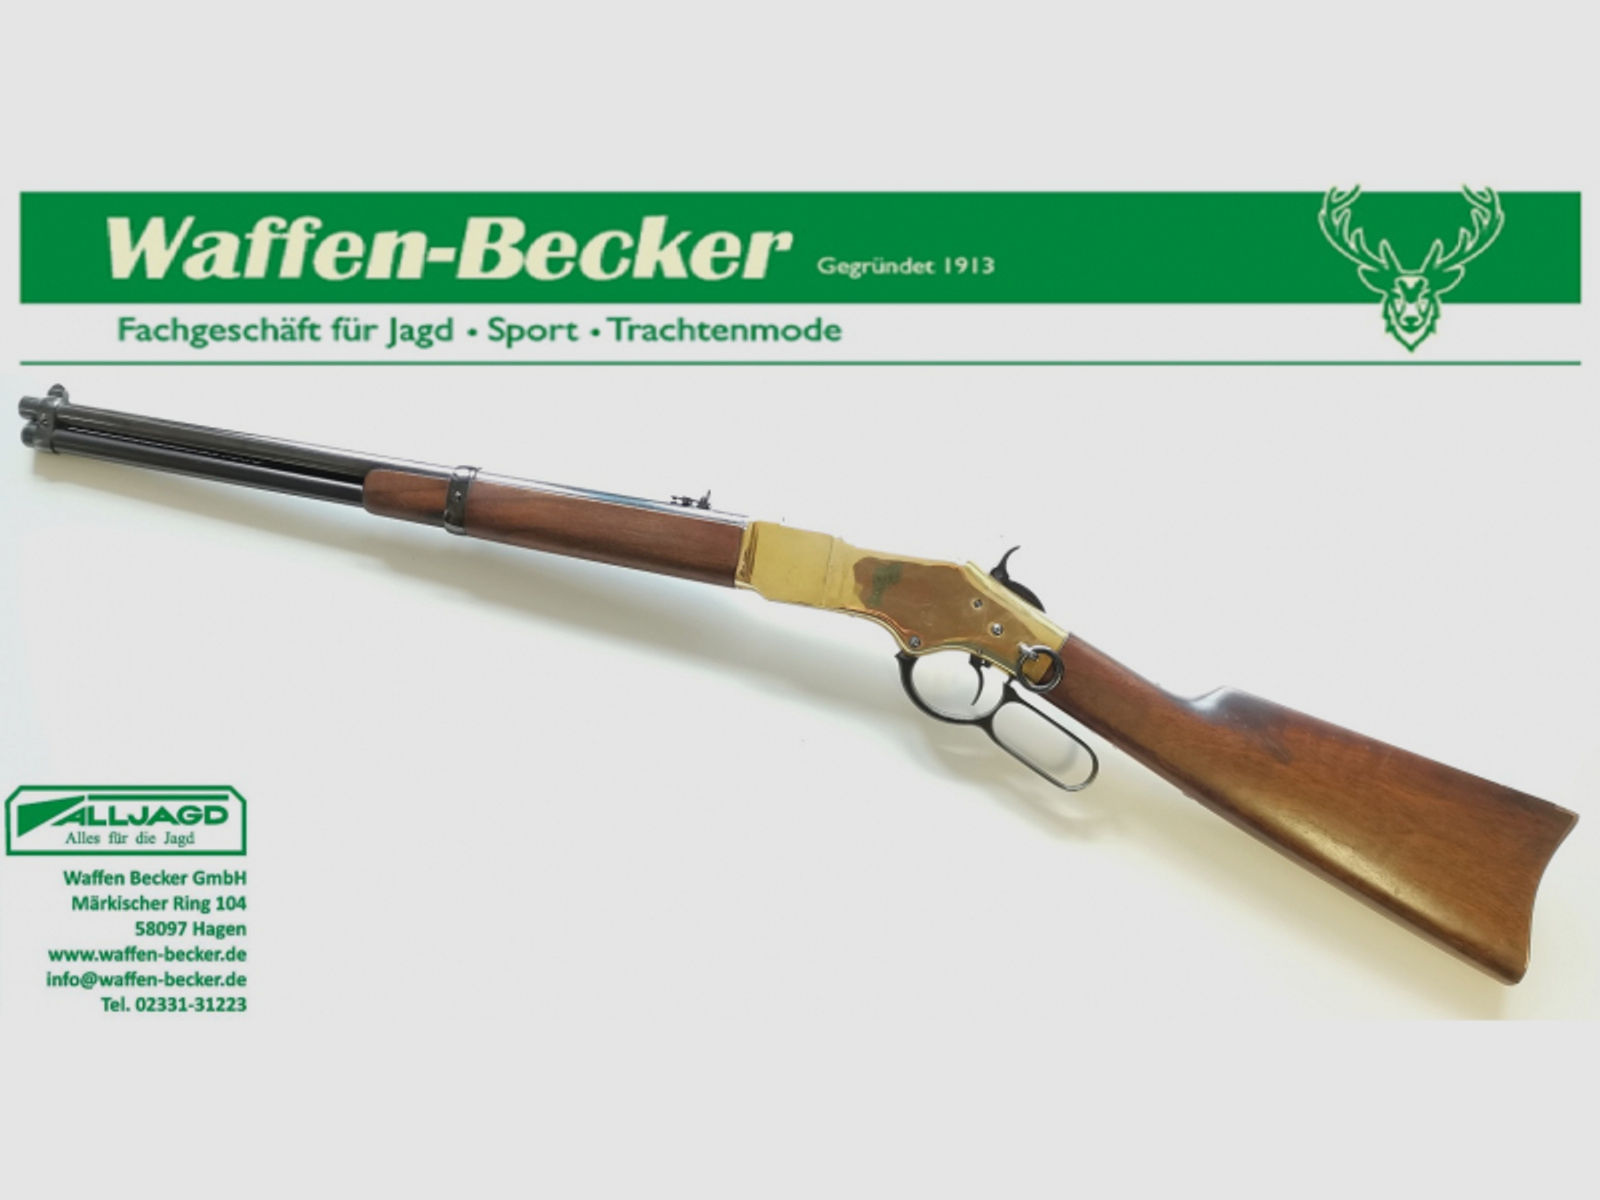 Unterhebelrepetierer Hege-Uberti Mod. 1866 Carbine Kal. .38 Special